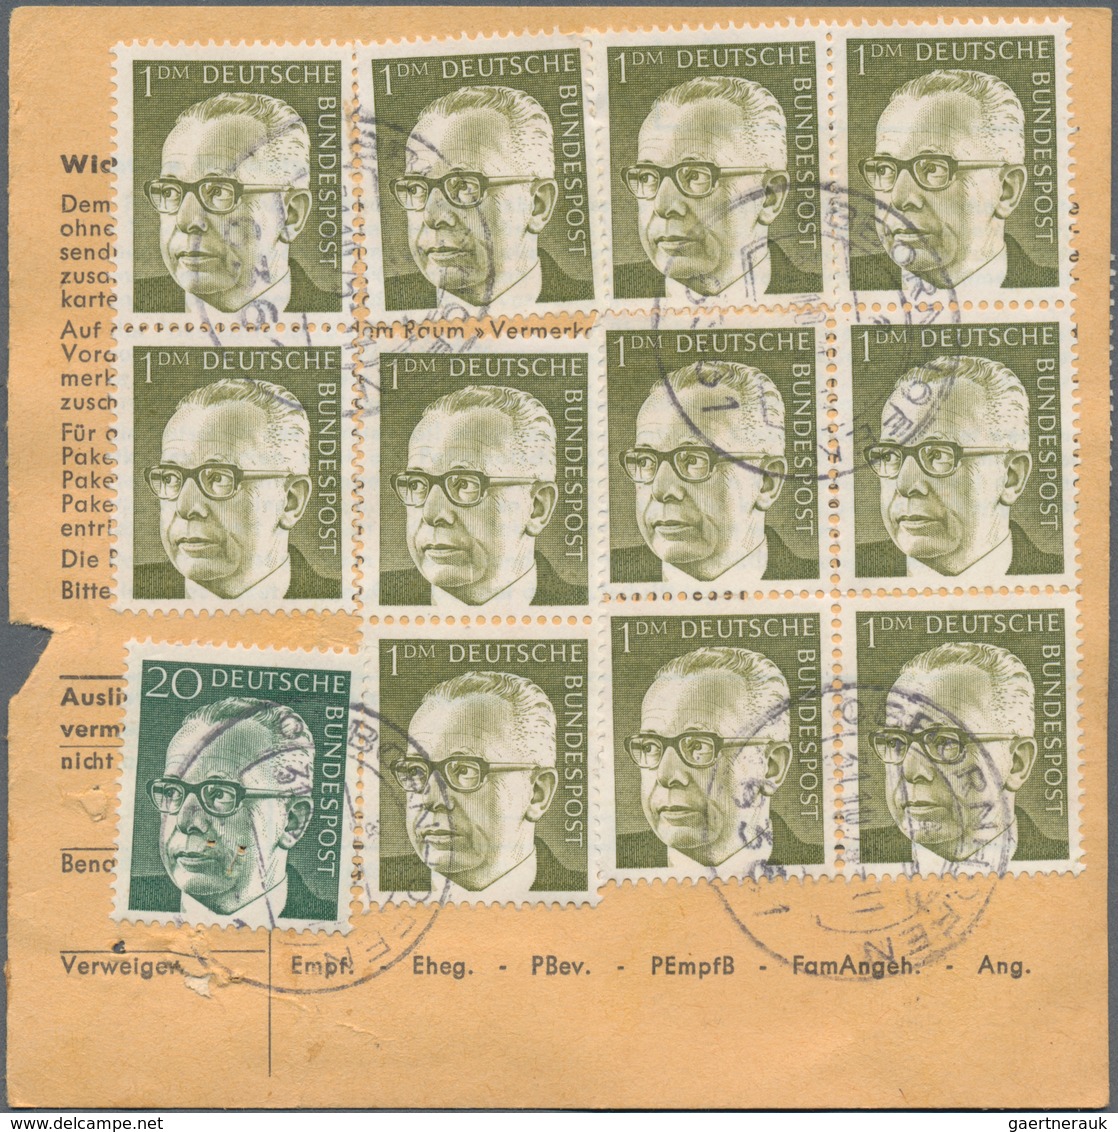 Bundesrepublik Deutschland: 1976/1978, Bestand von ca. 760 frankierten Paketkarten-Stammteilen mit F